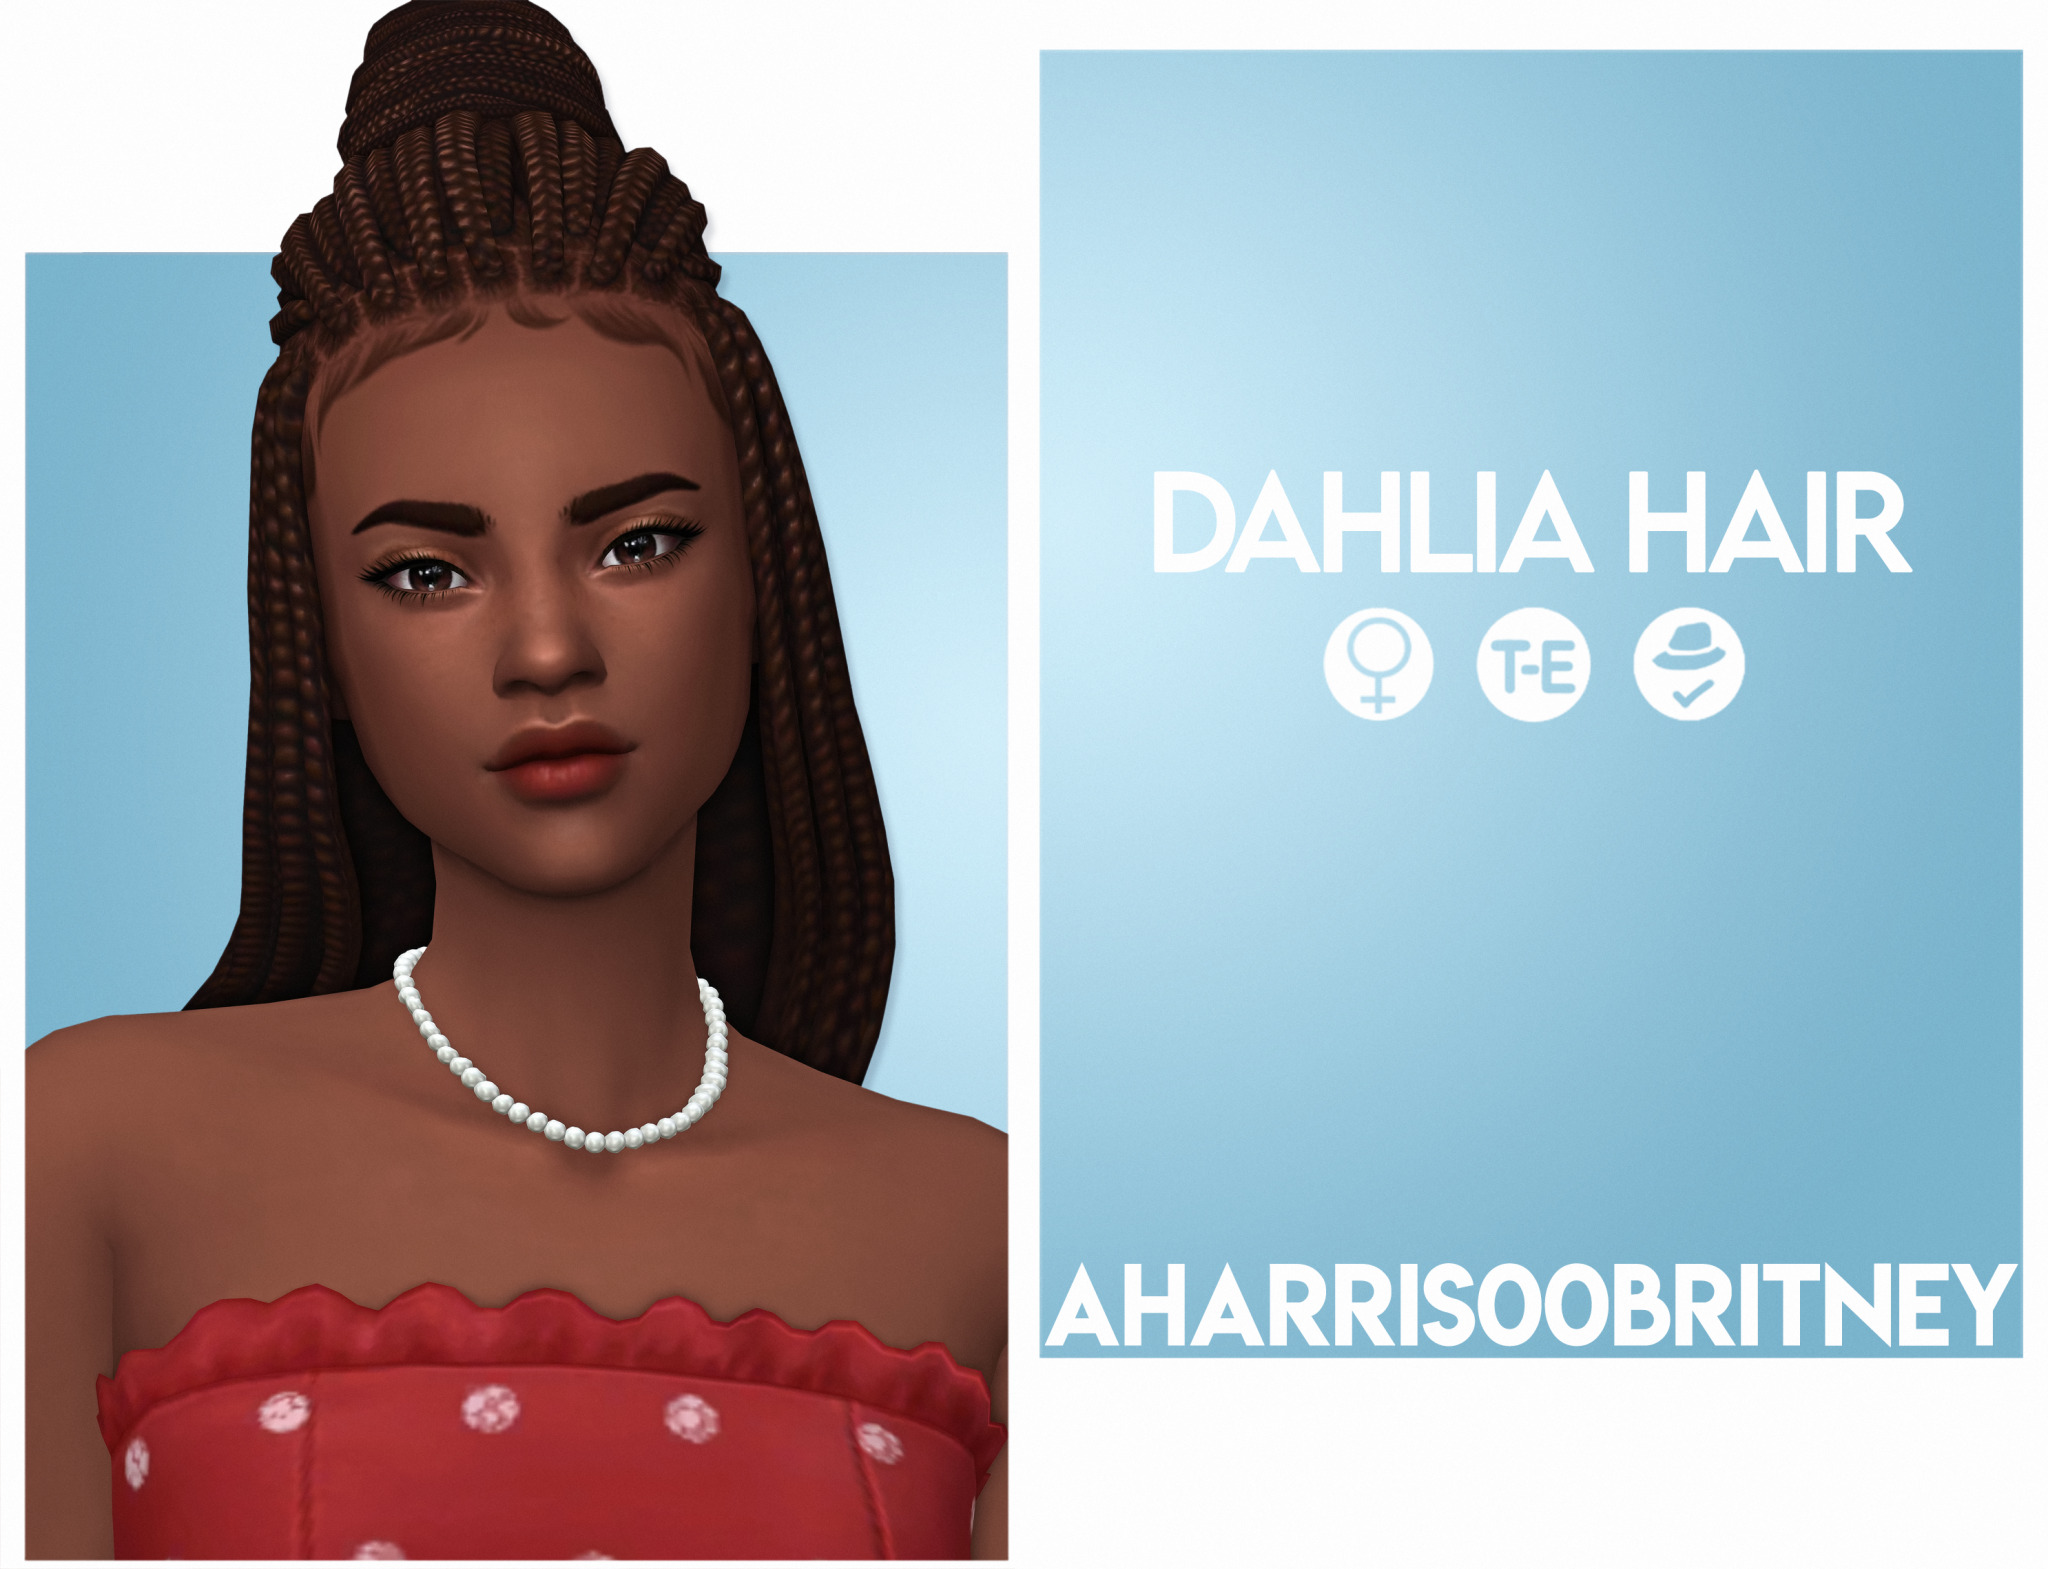 Dahlia Hair at AHarris00Britney » Sims 4 Updates